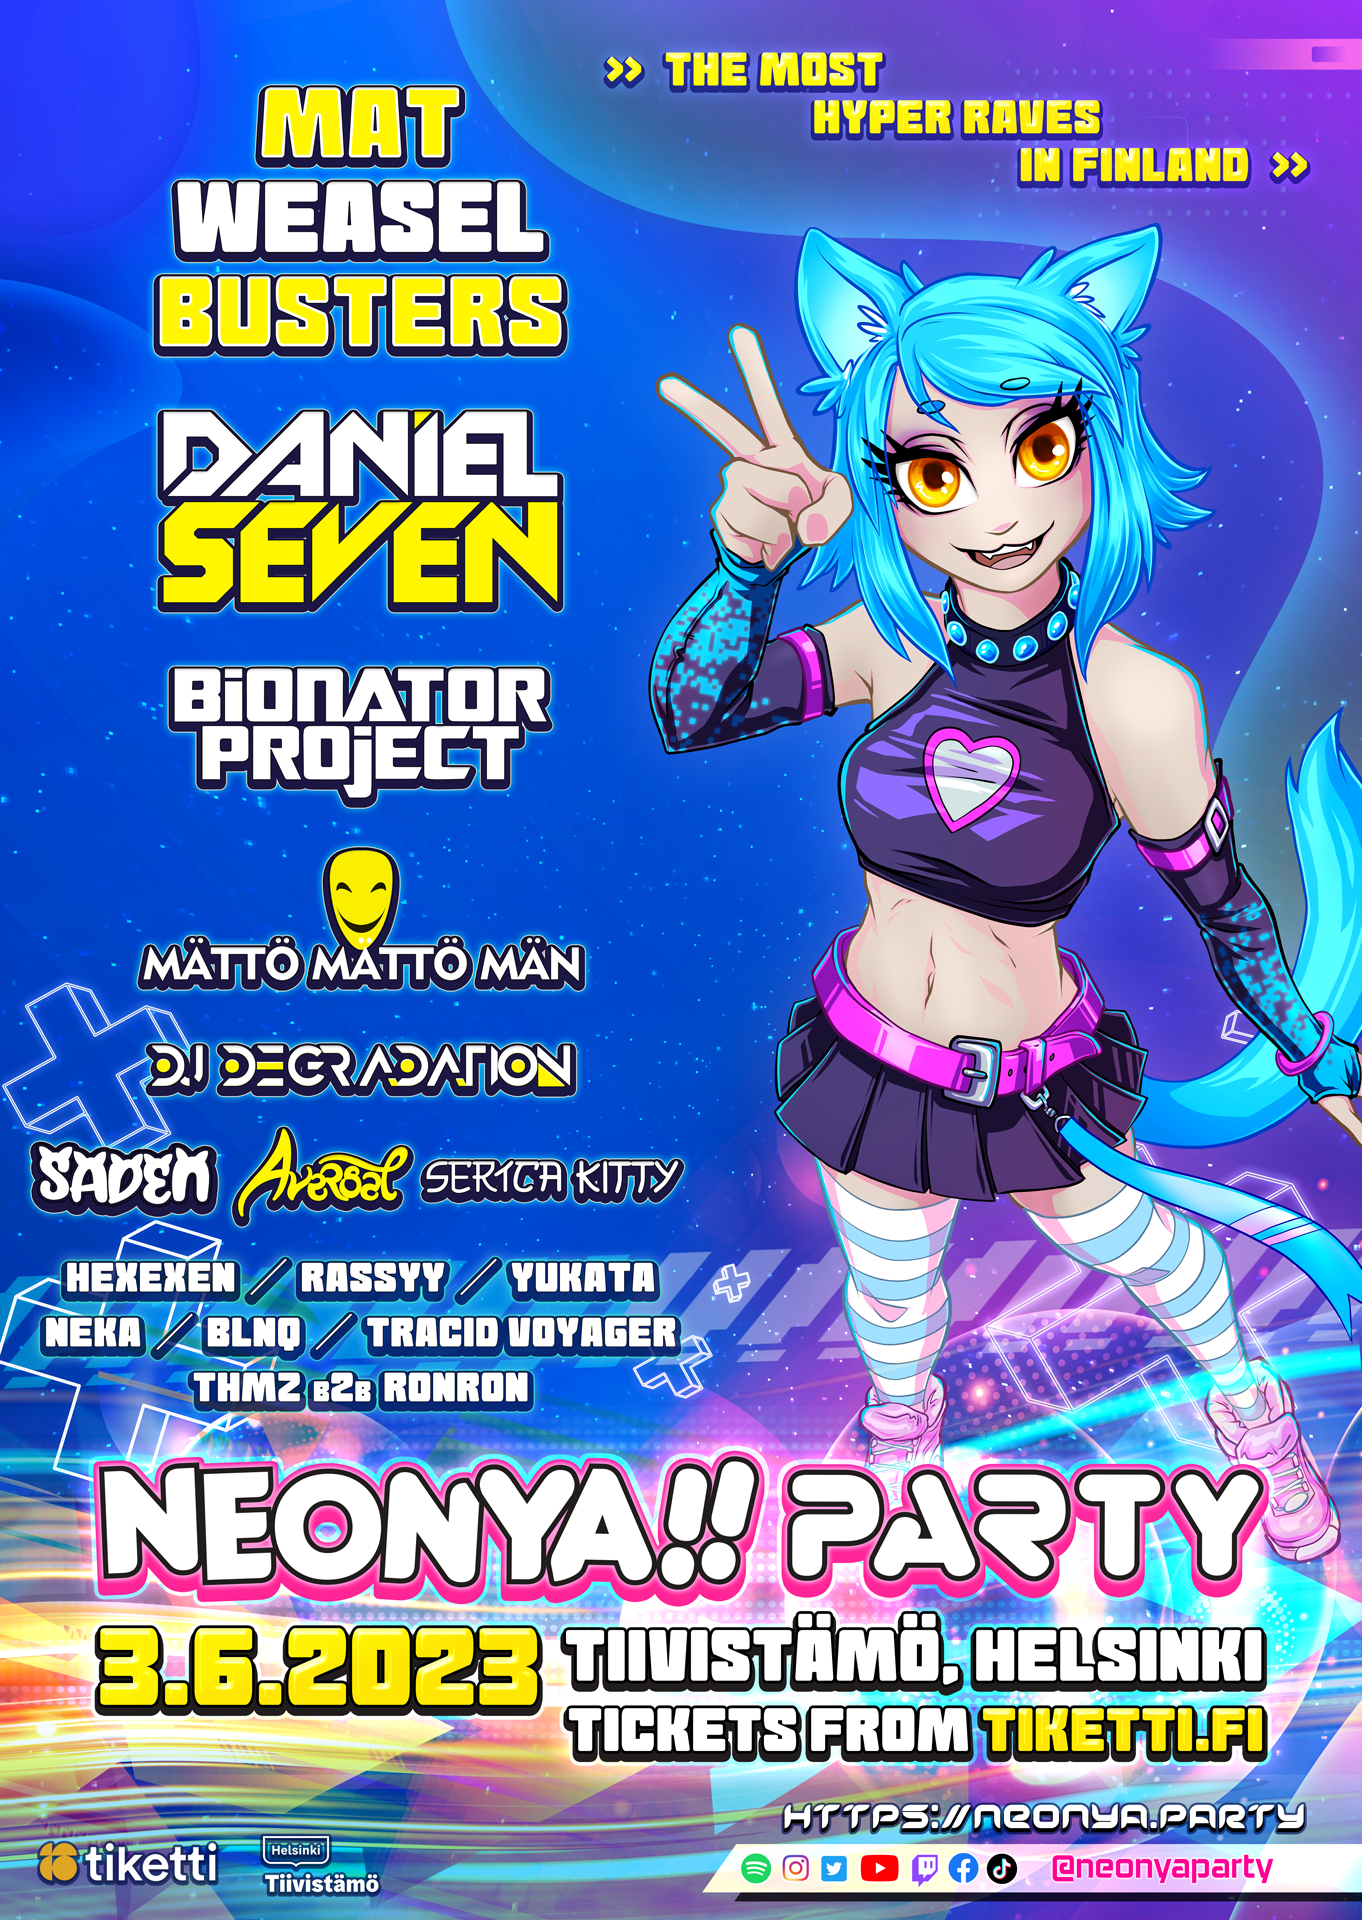 Neonya!! Party: Hardcore Heat 3.6.2023 at Tiivistämö, Helsinki